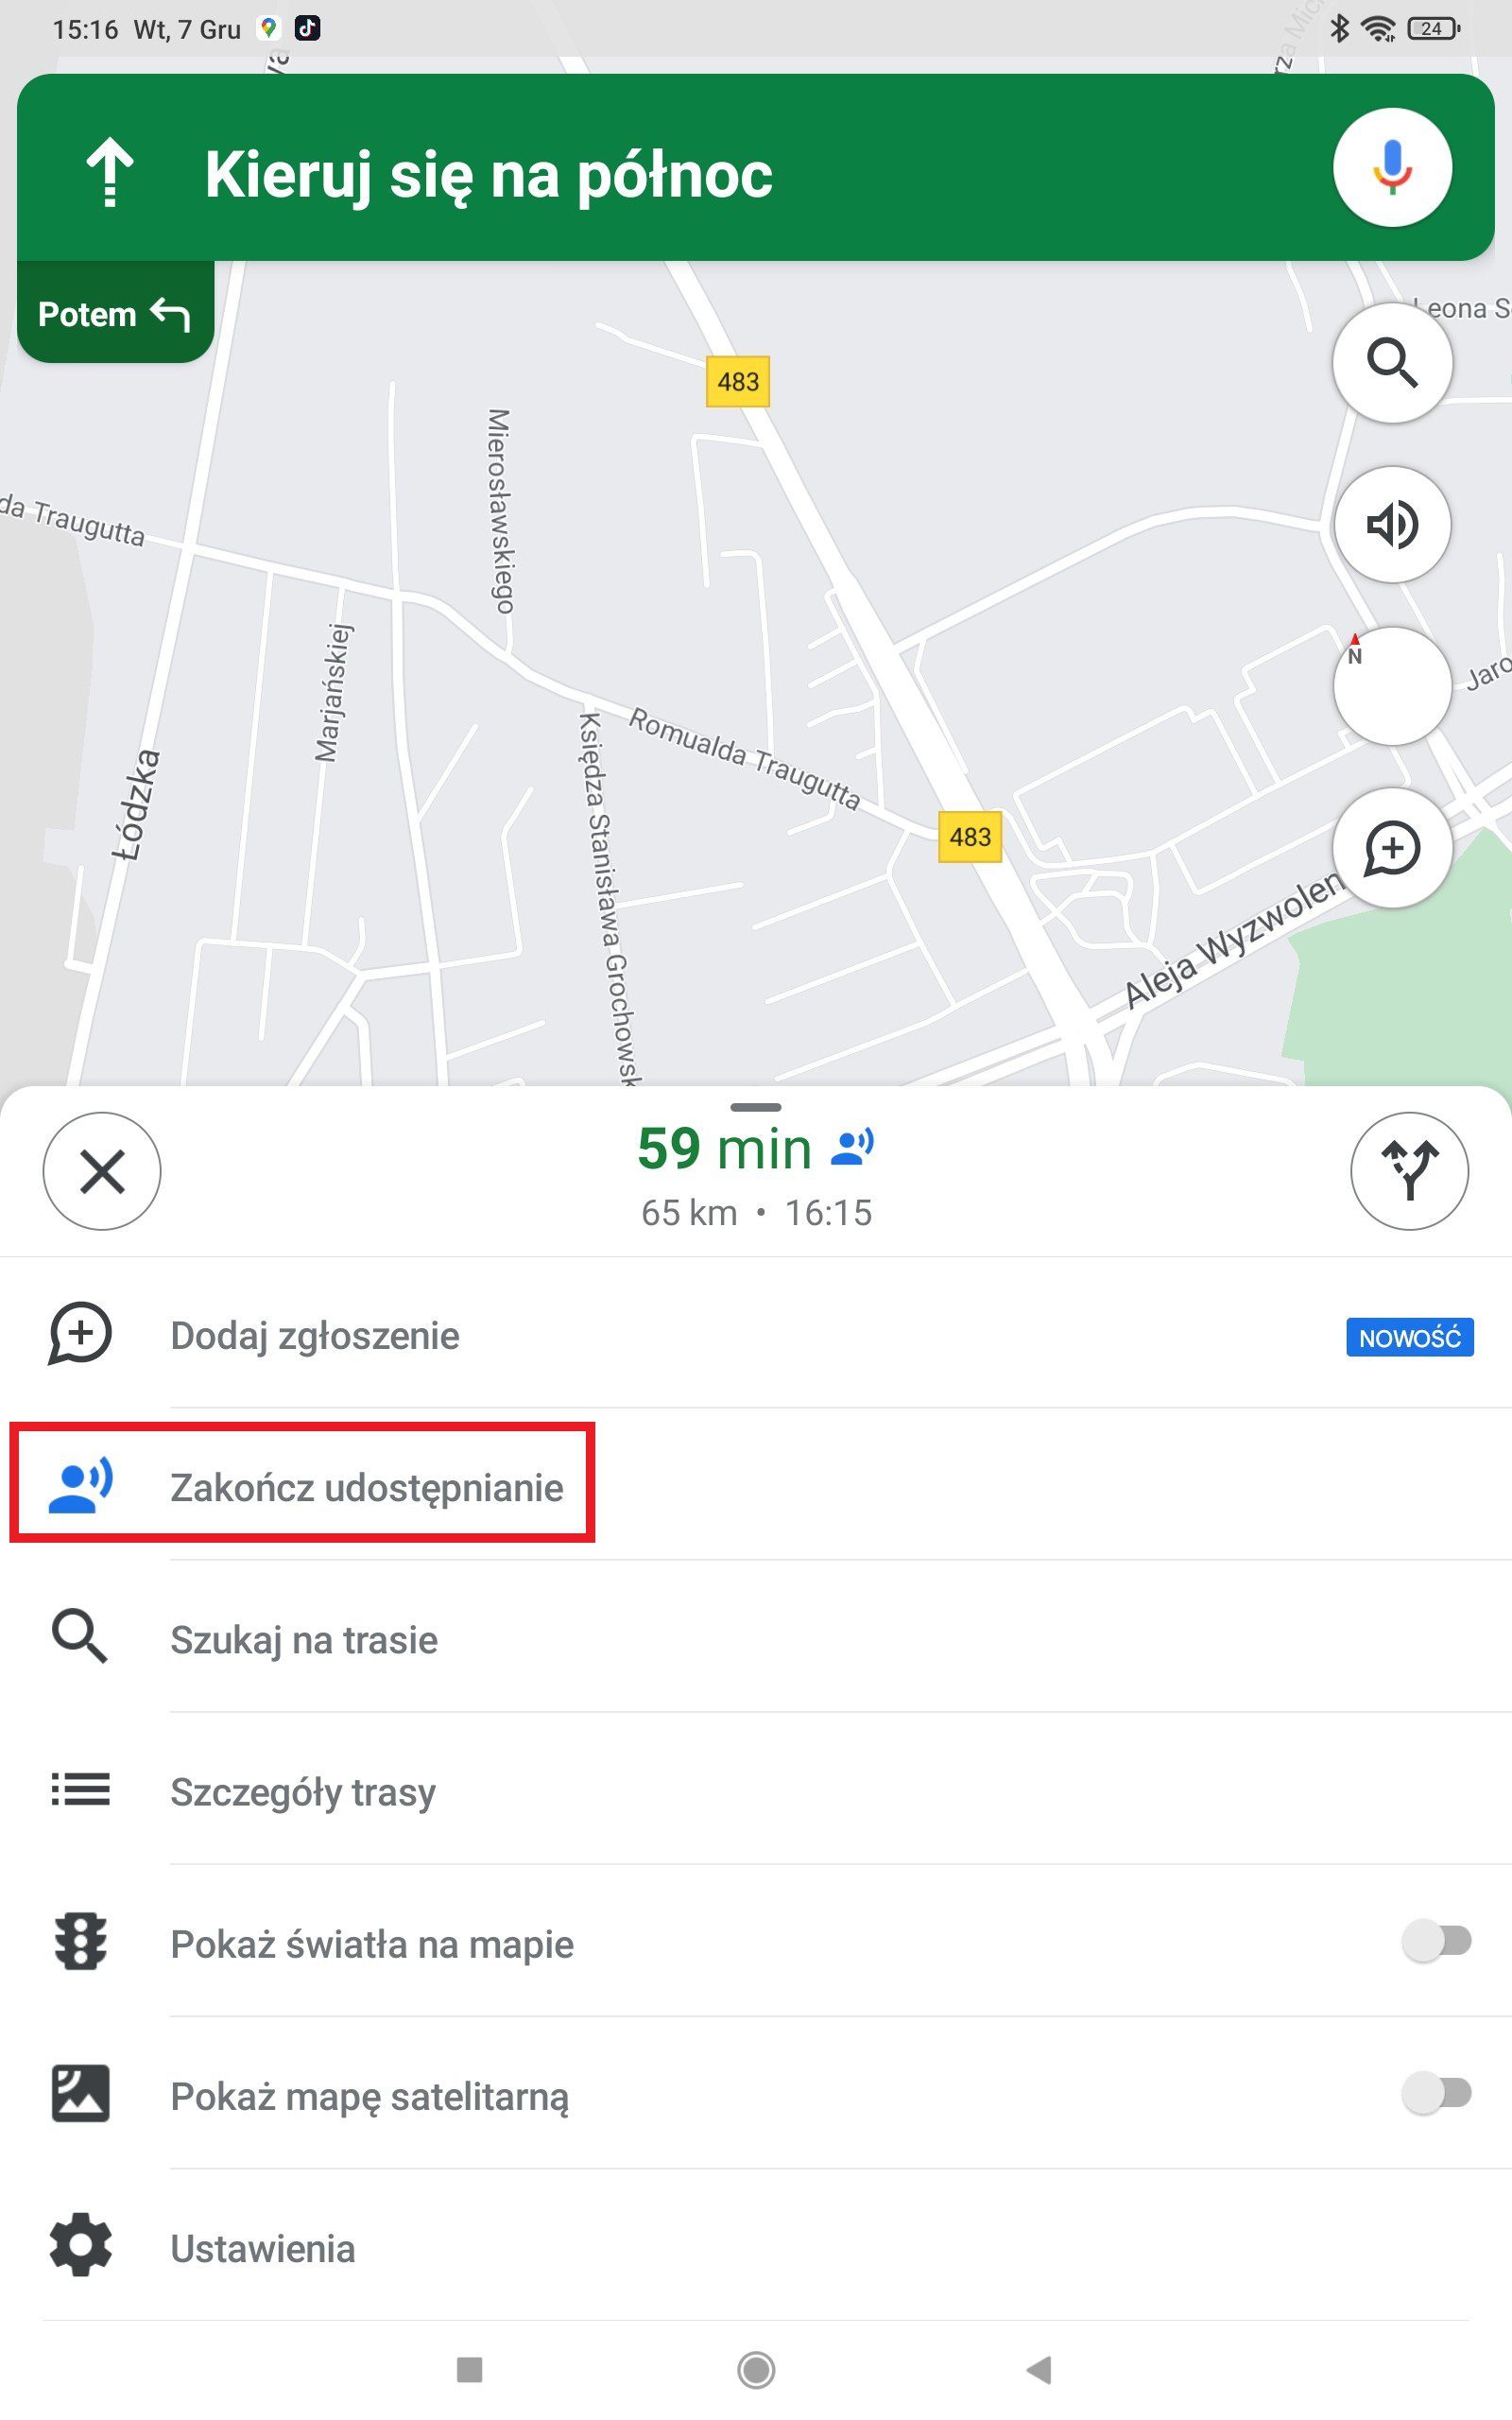 google maps zakończenie udostępniania